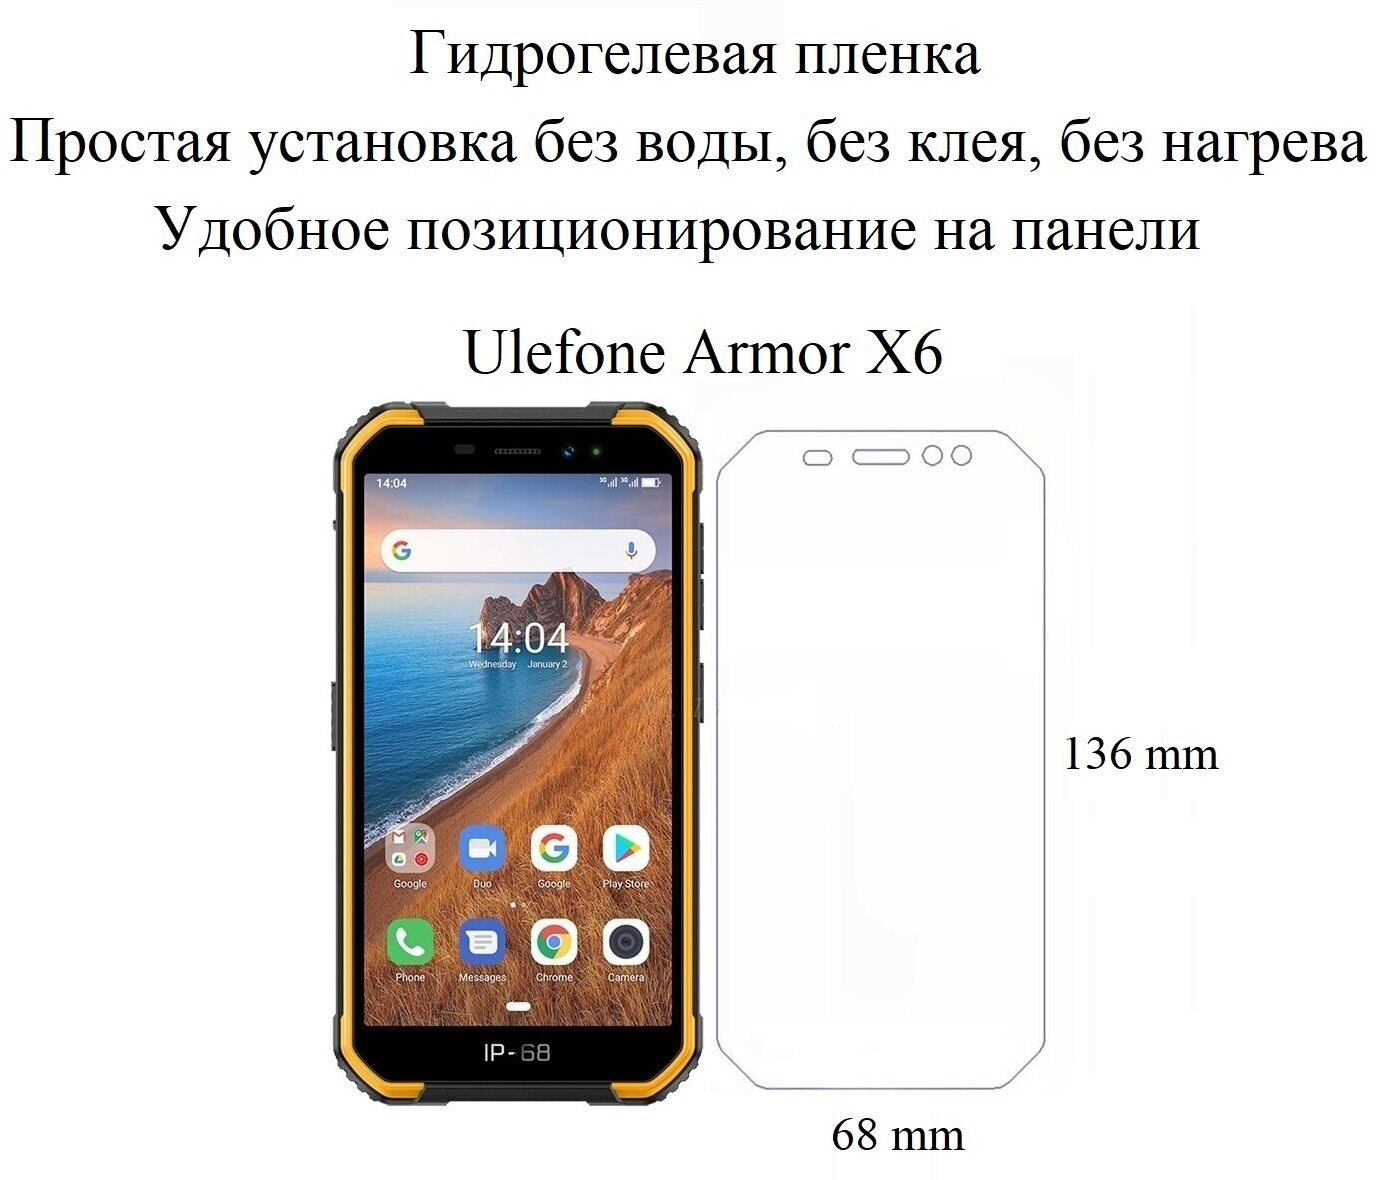 Глянцевая гидрогелевая пленка hoco. на экран смартфона Ulefone Armor X6